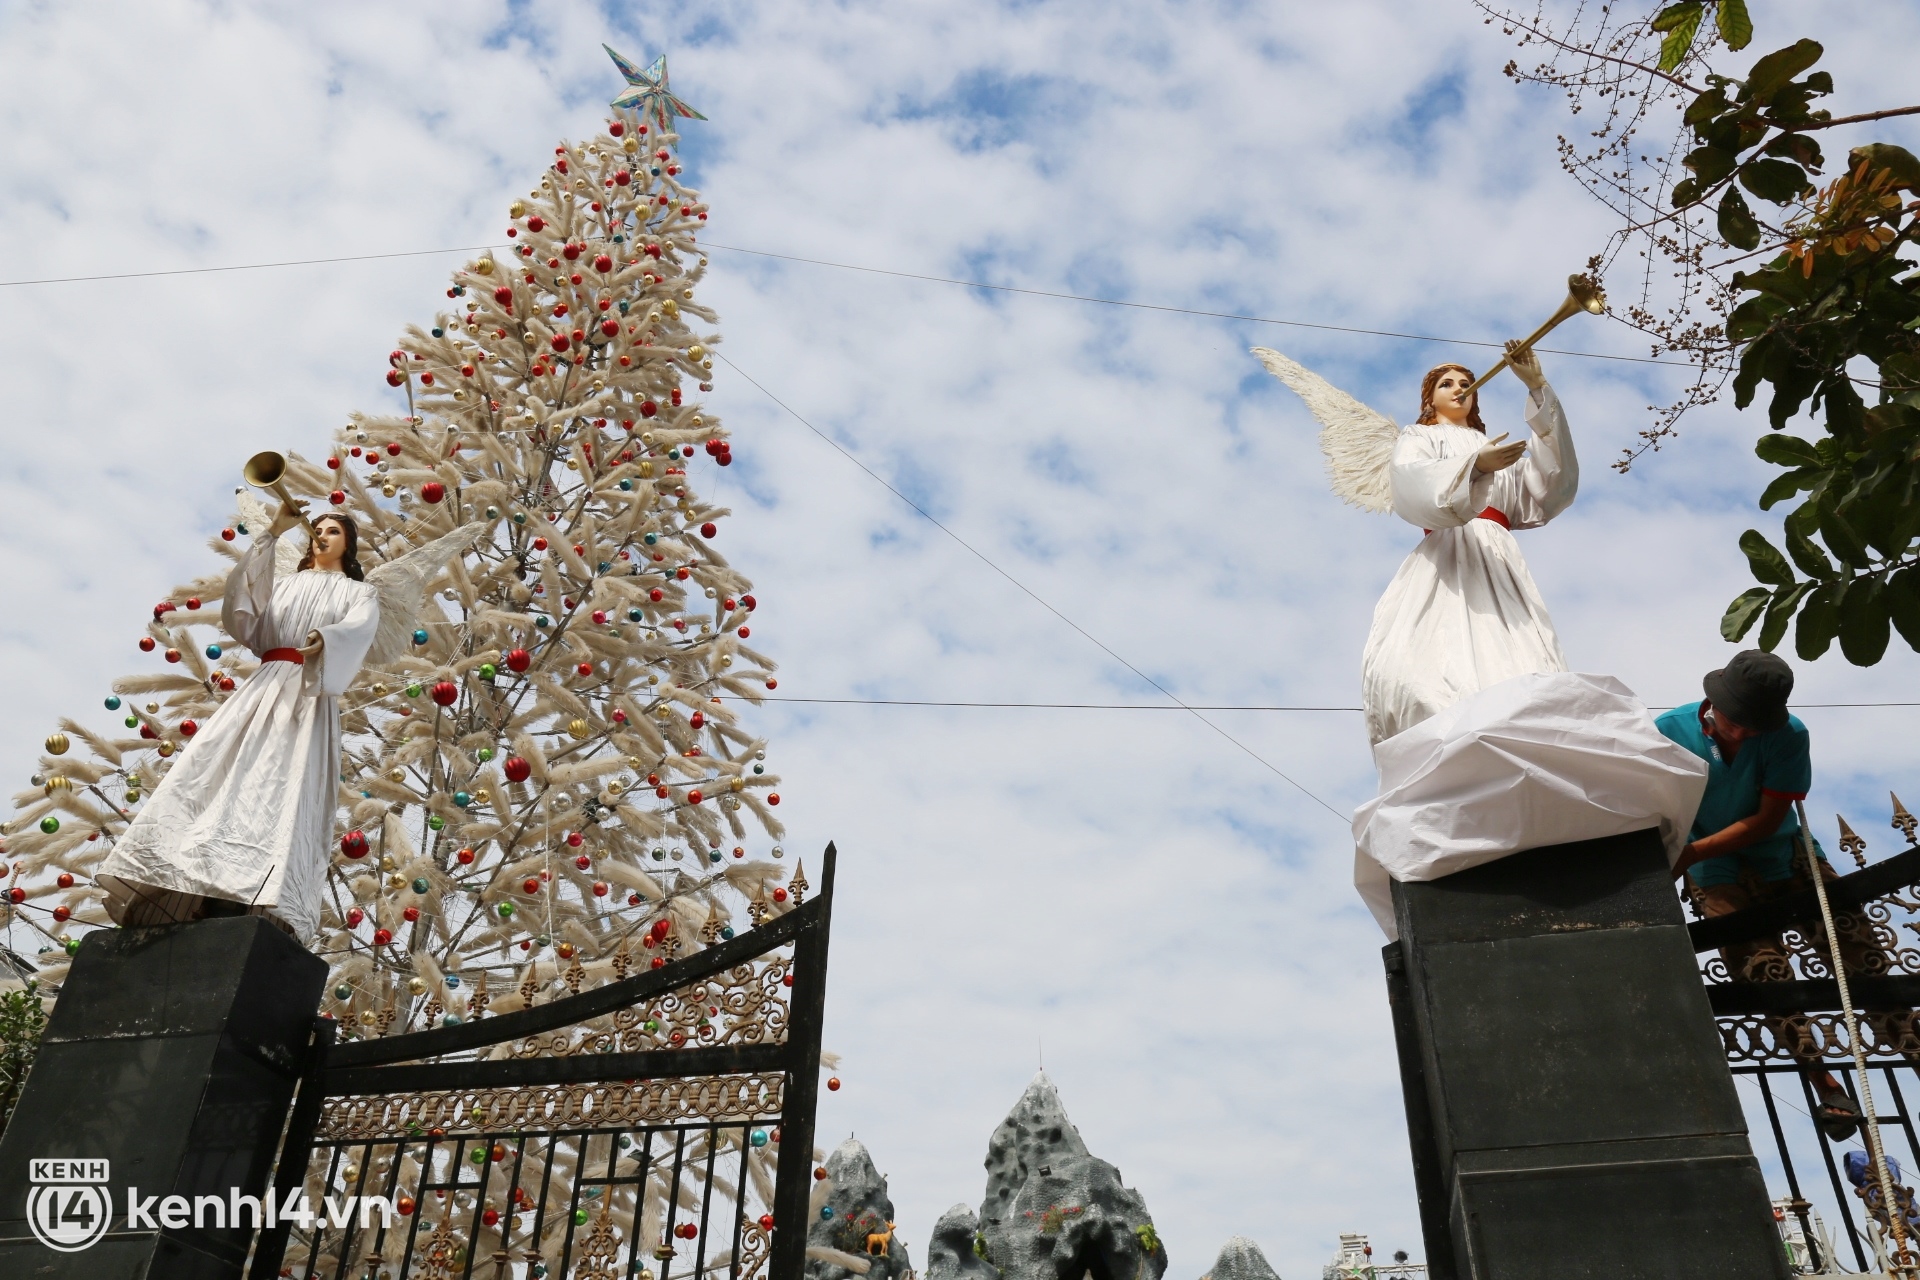 Cảnh vắng lặng chưa từng có của xóm đạo lớn nhất Sài Gòn trước thềm Noel: Năm nay buồn lắm, người nhà mất hết rồi, có còn ai nữa đâu… - Ảnh 10.